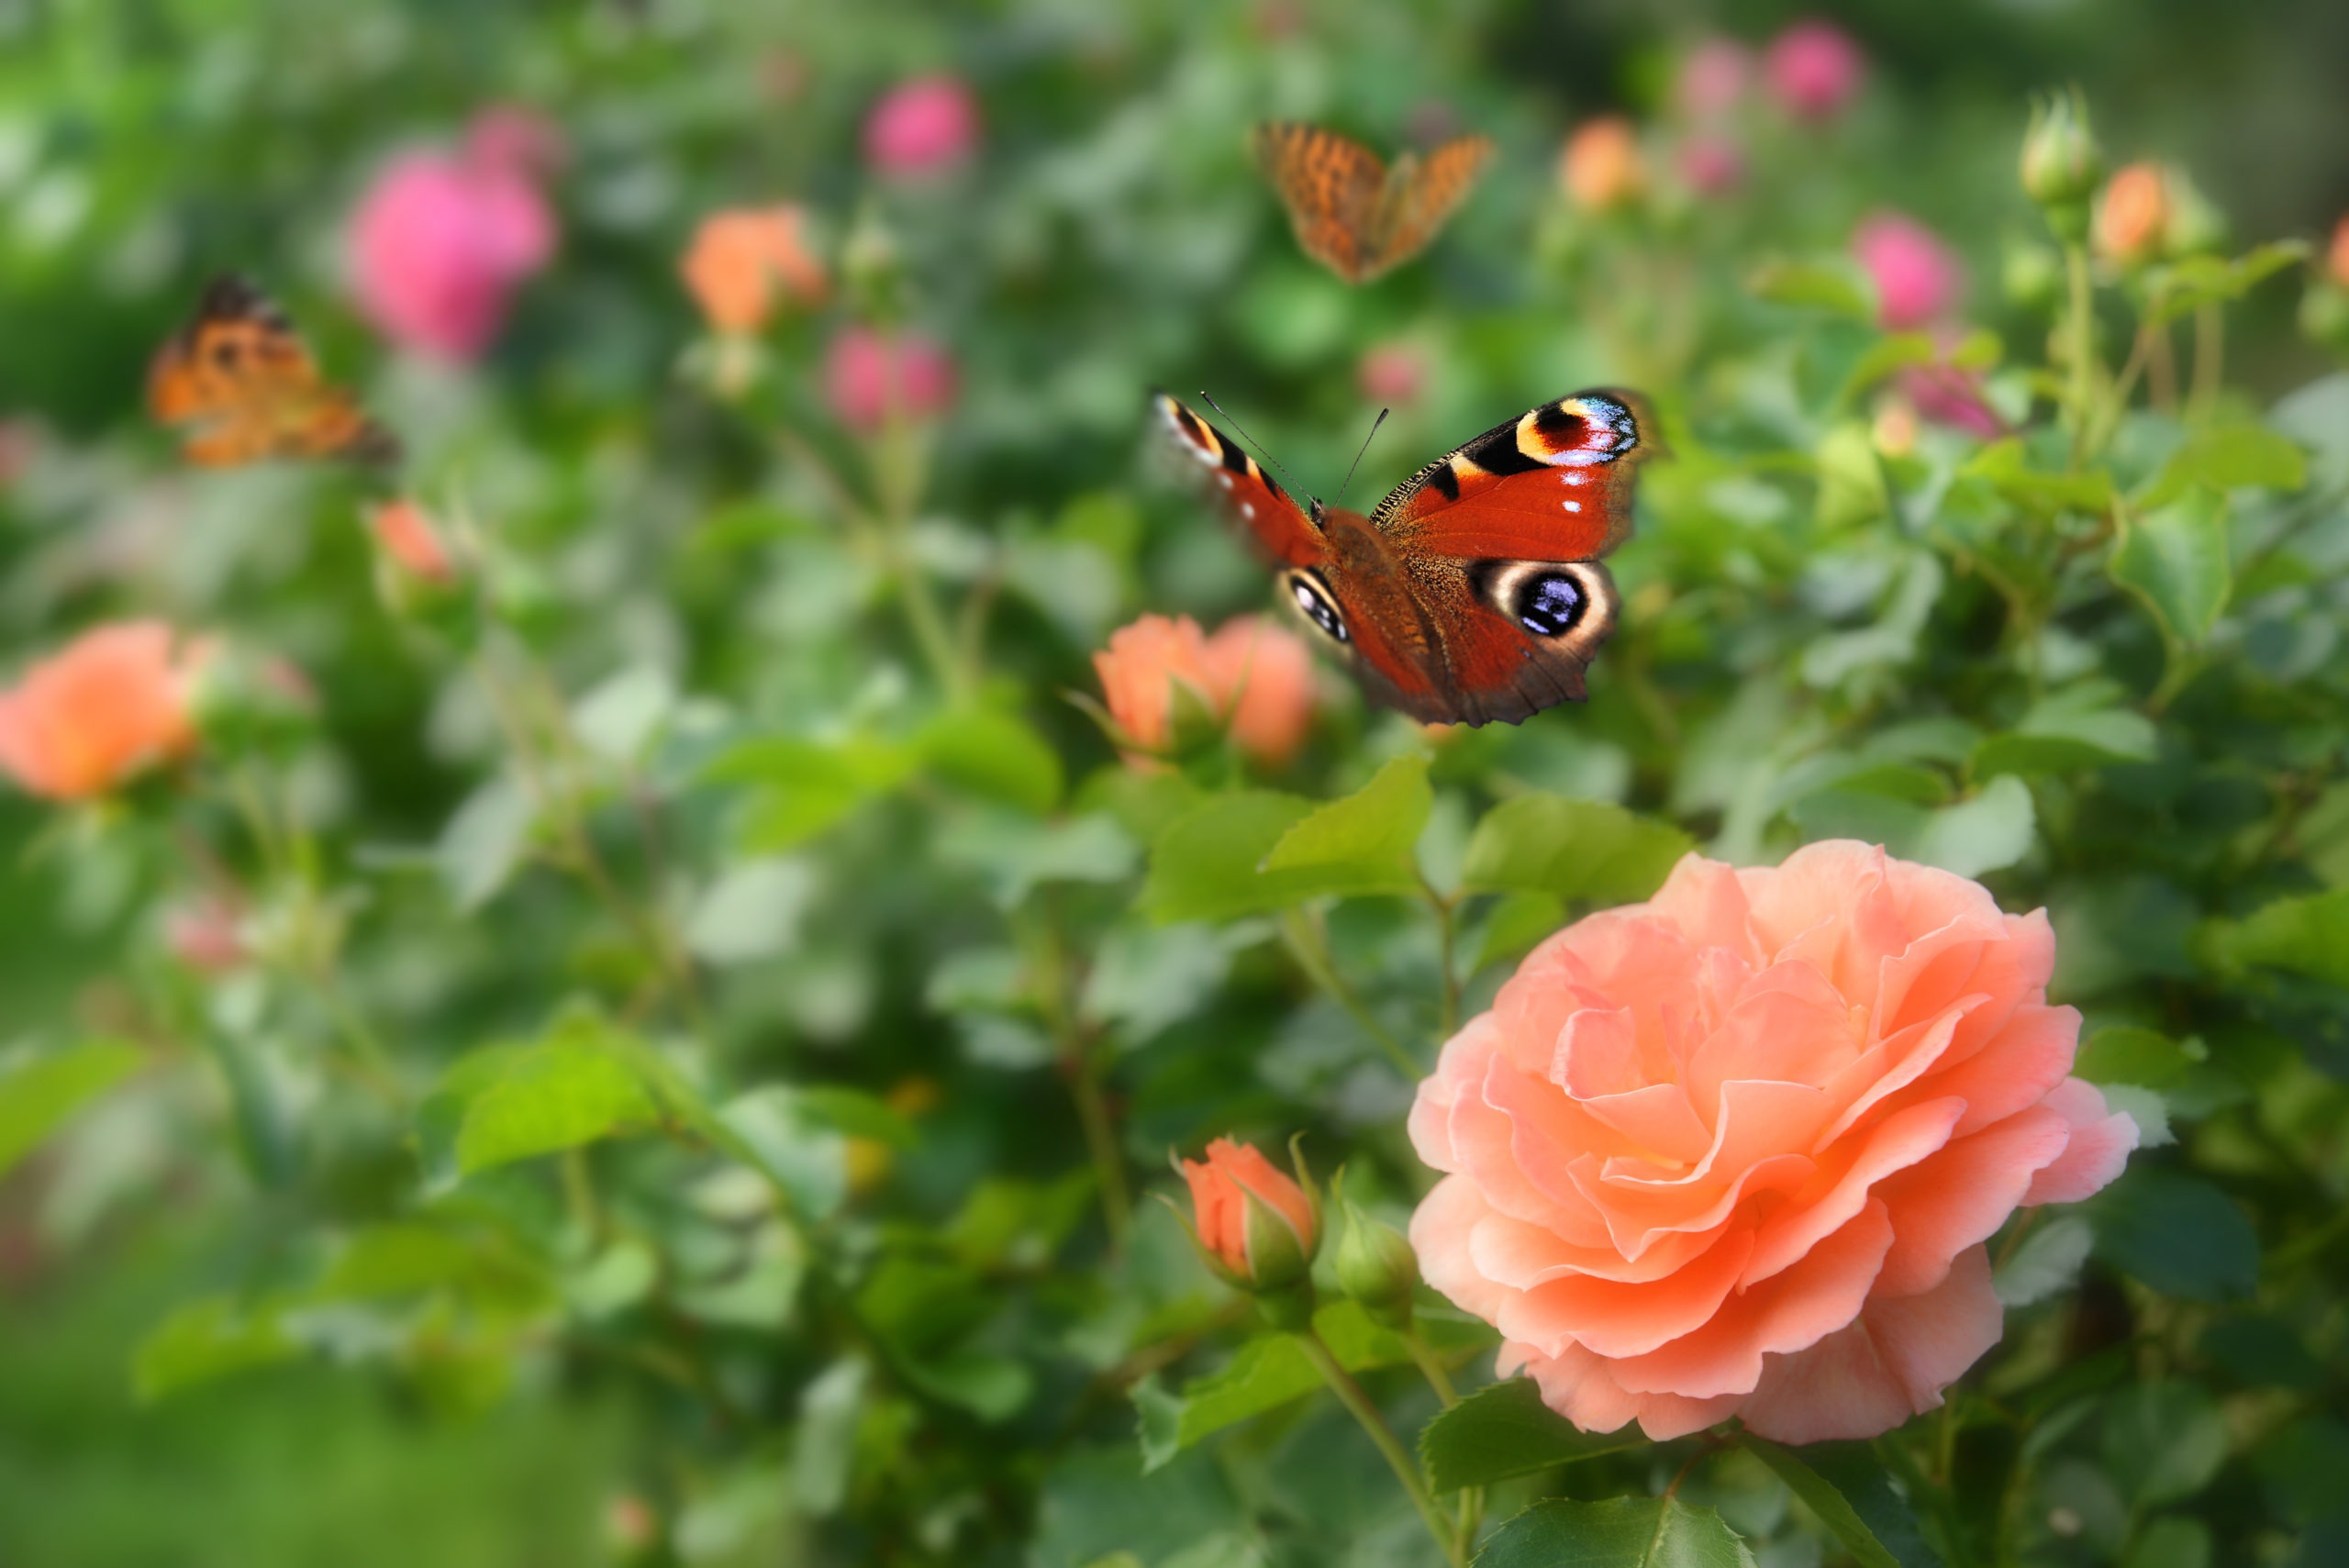 Rose garden with butterflies